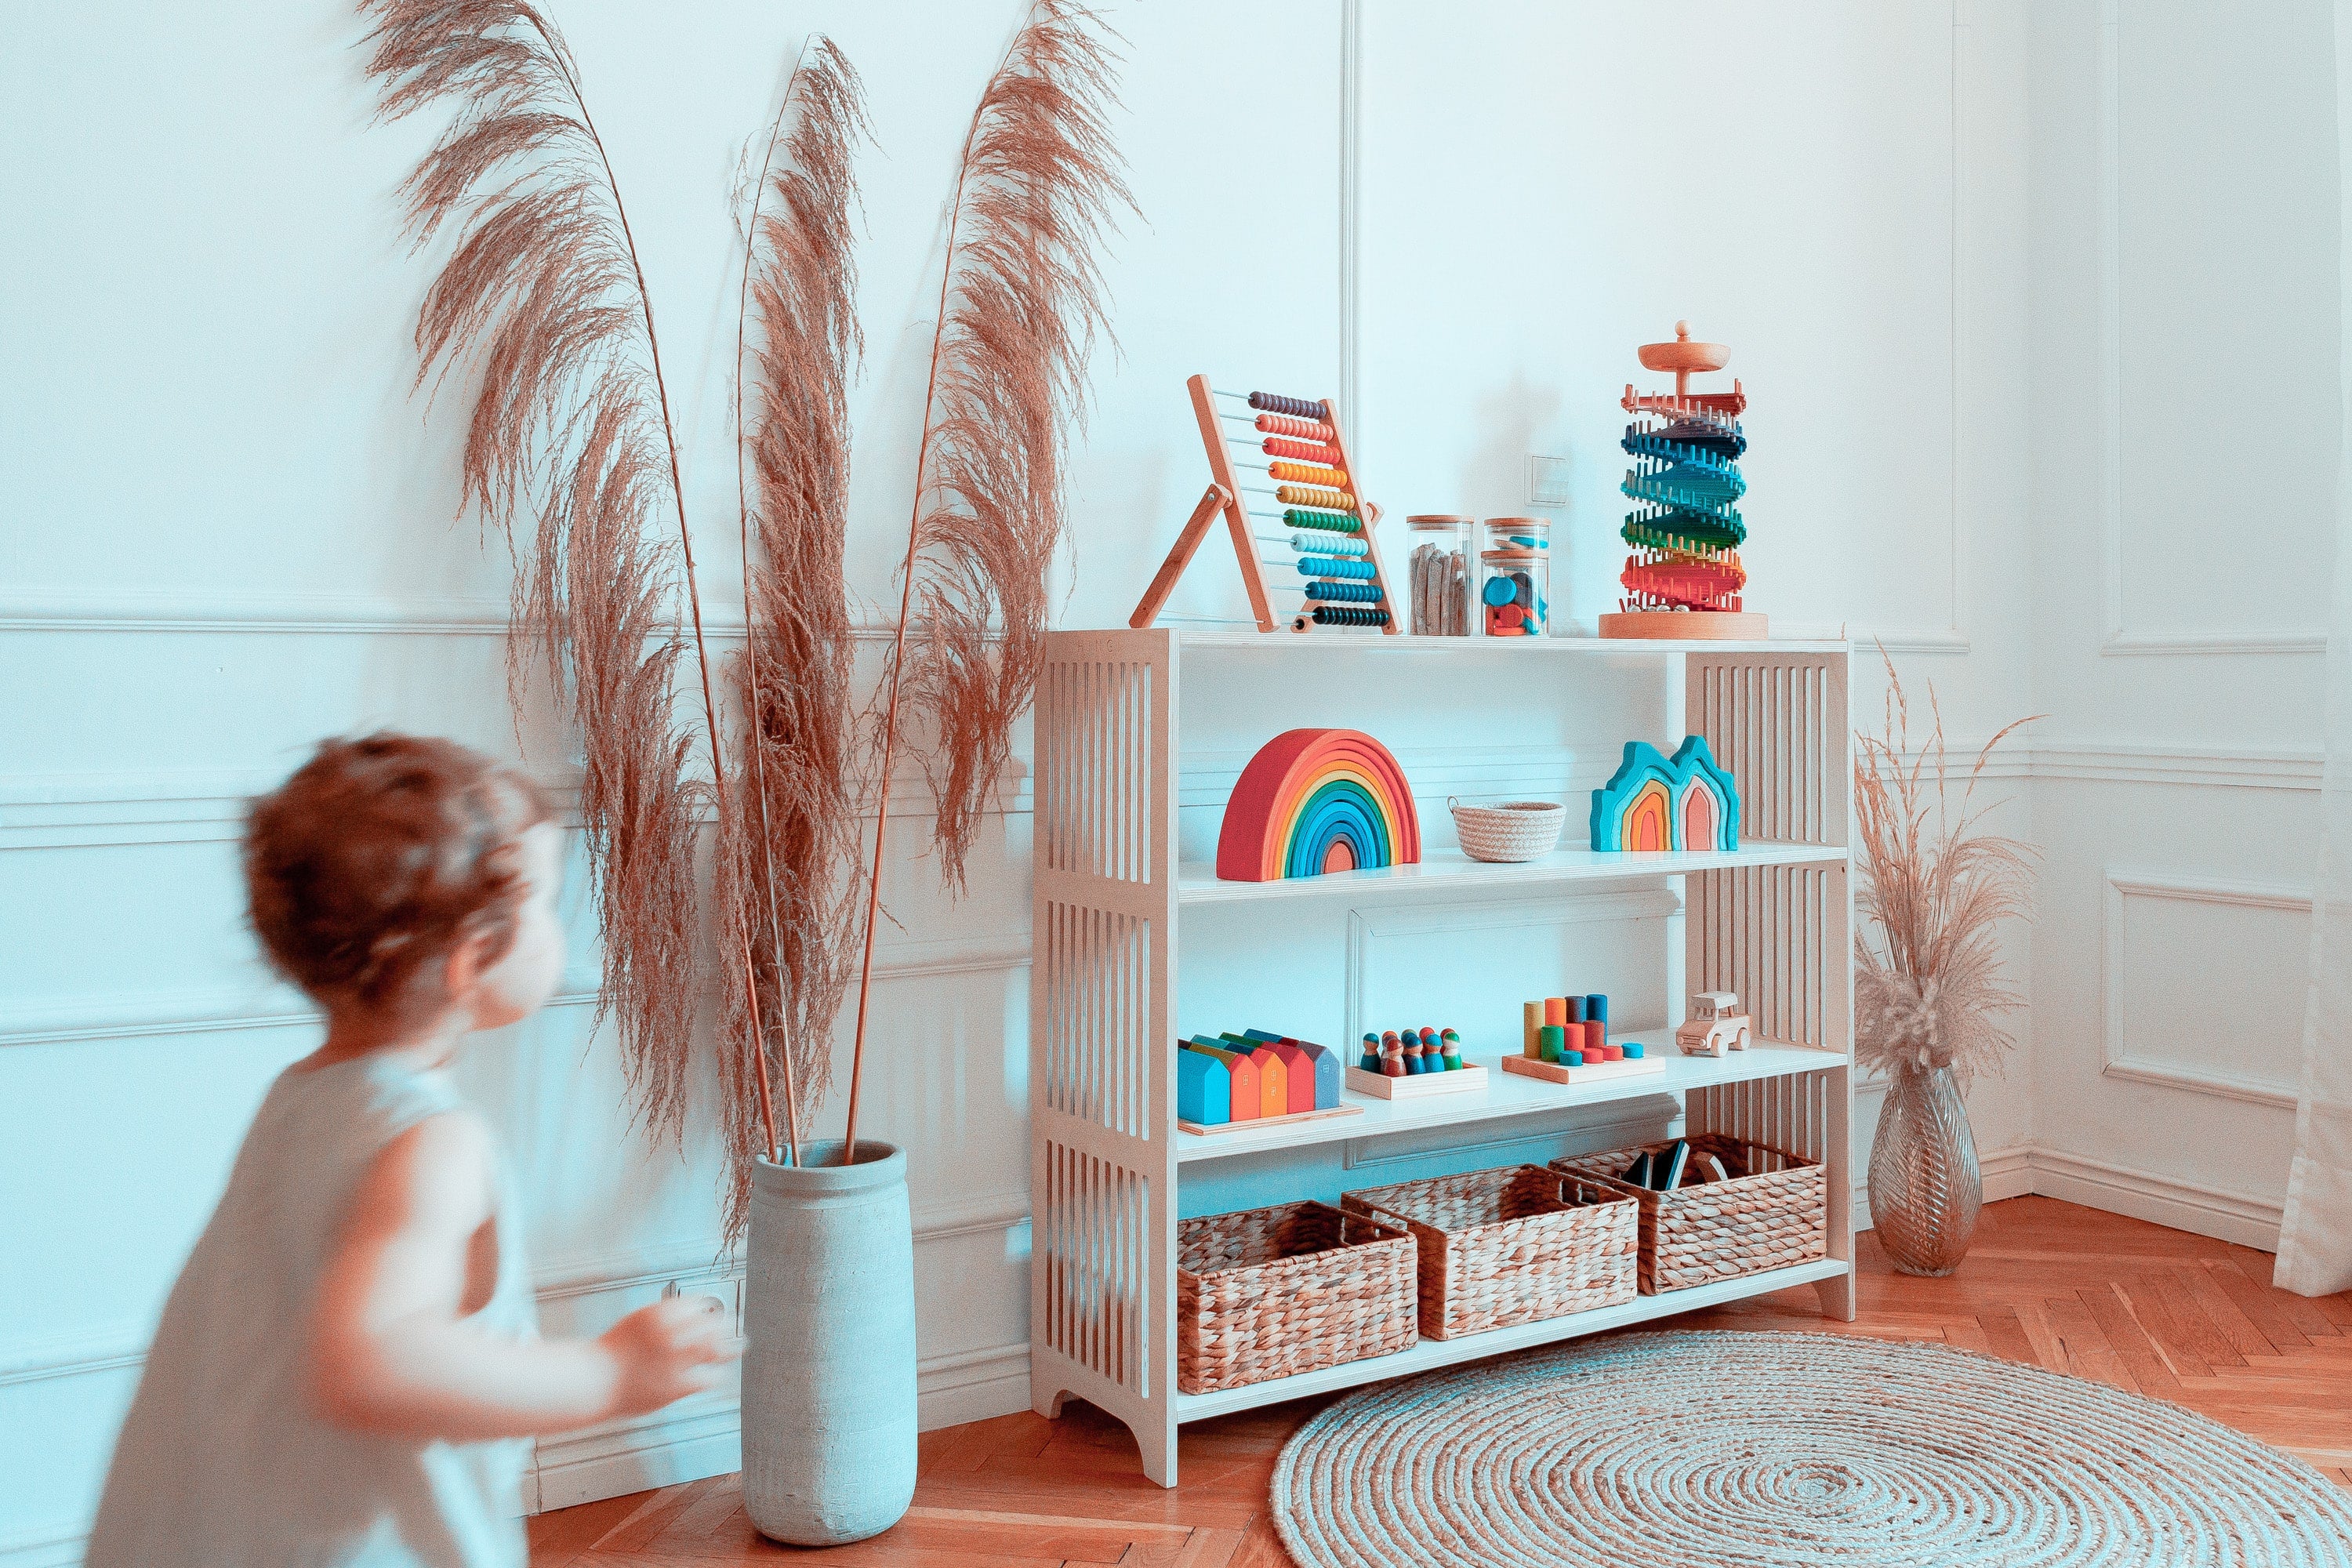 Étagère en bois pour enfants, bibliothèque Montessori / Waldorf